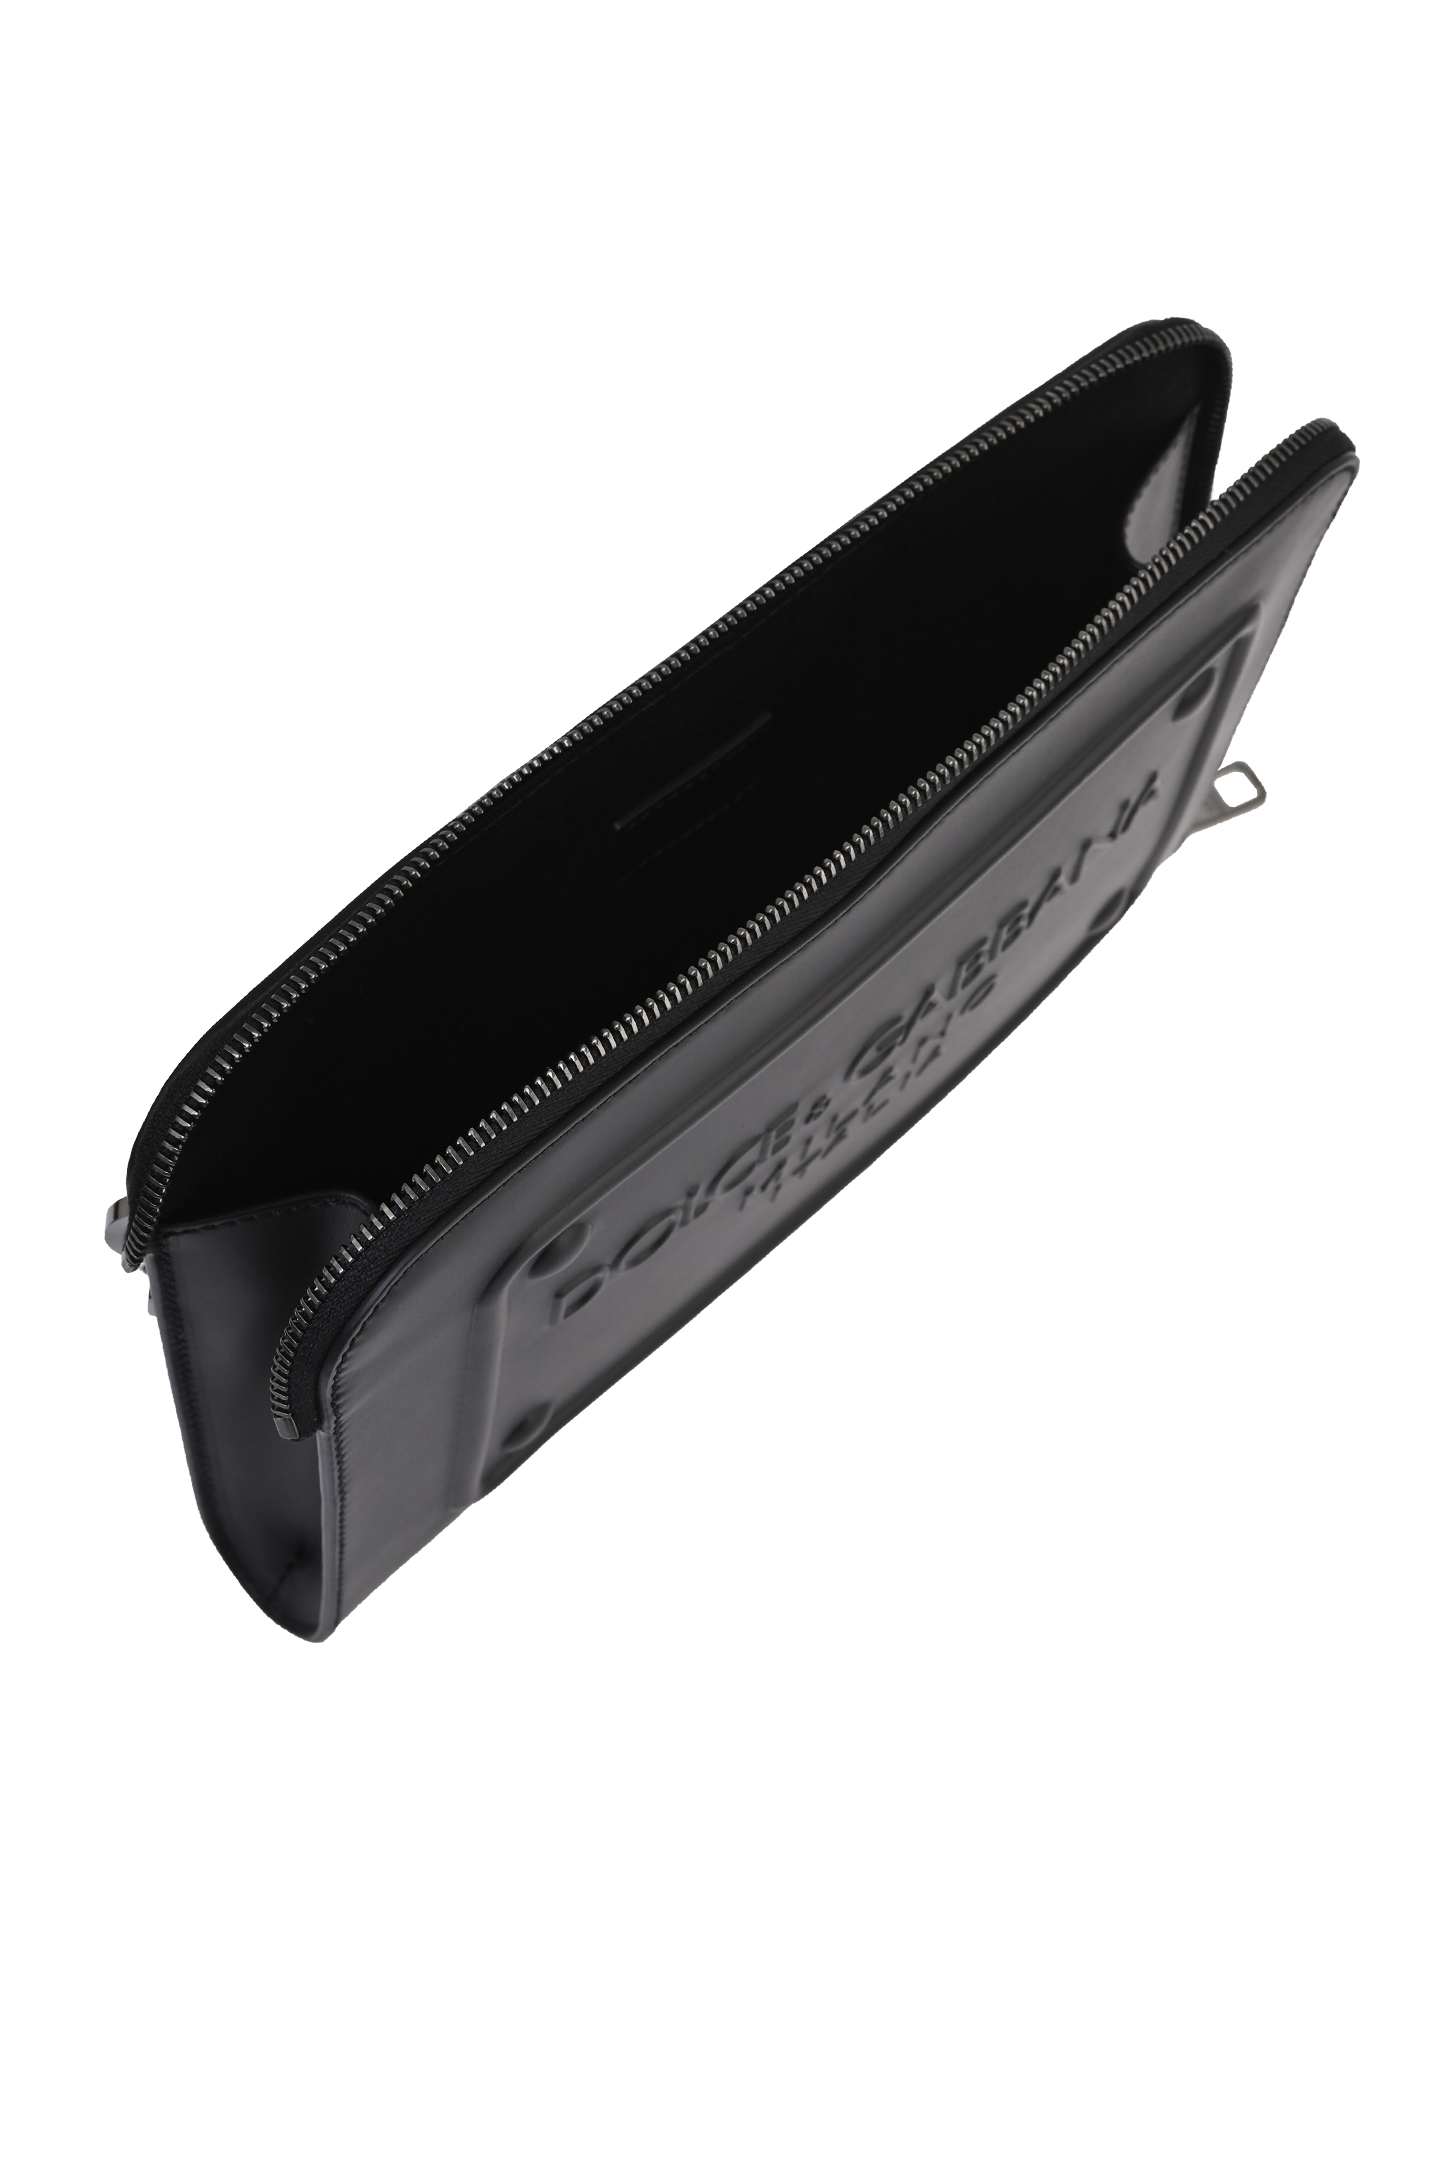 Кожаный клатч DOLCE & GABBANA BM1751 AG218, цвет: Черный, Мужской